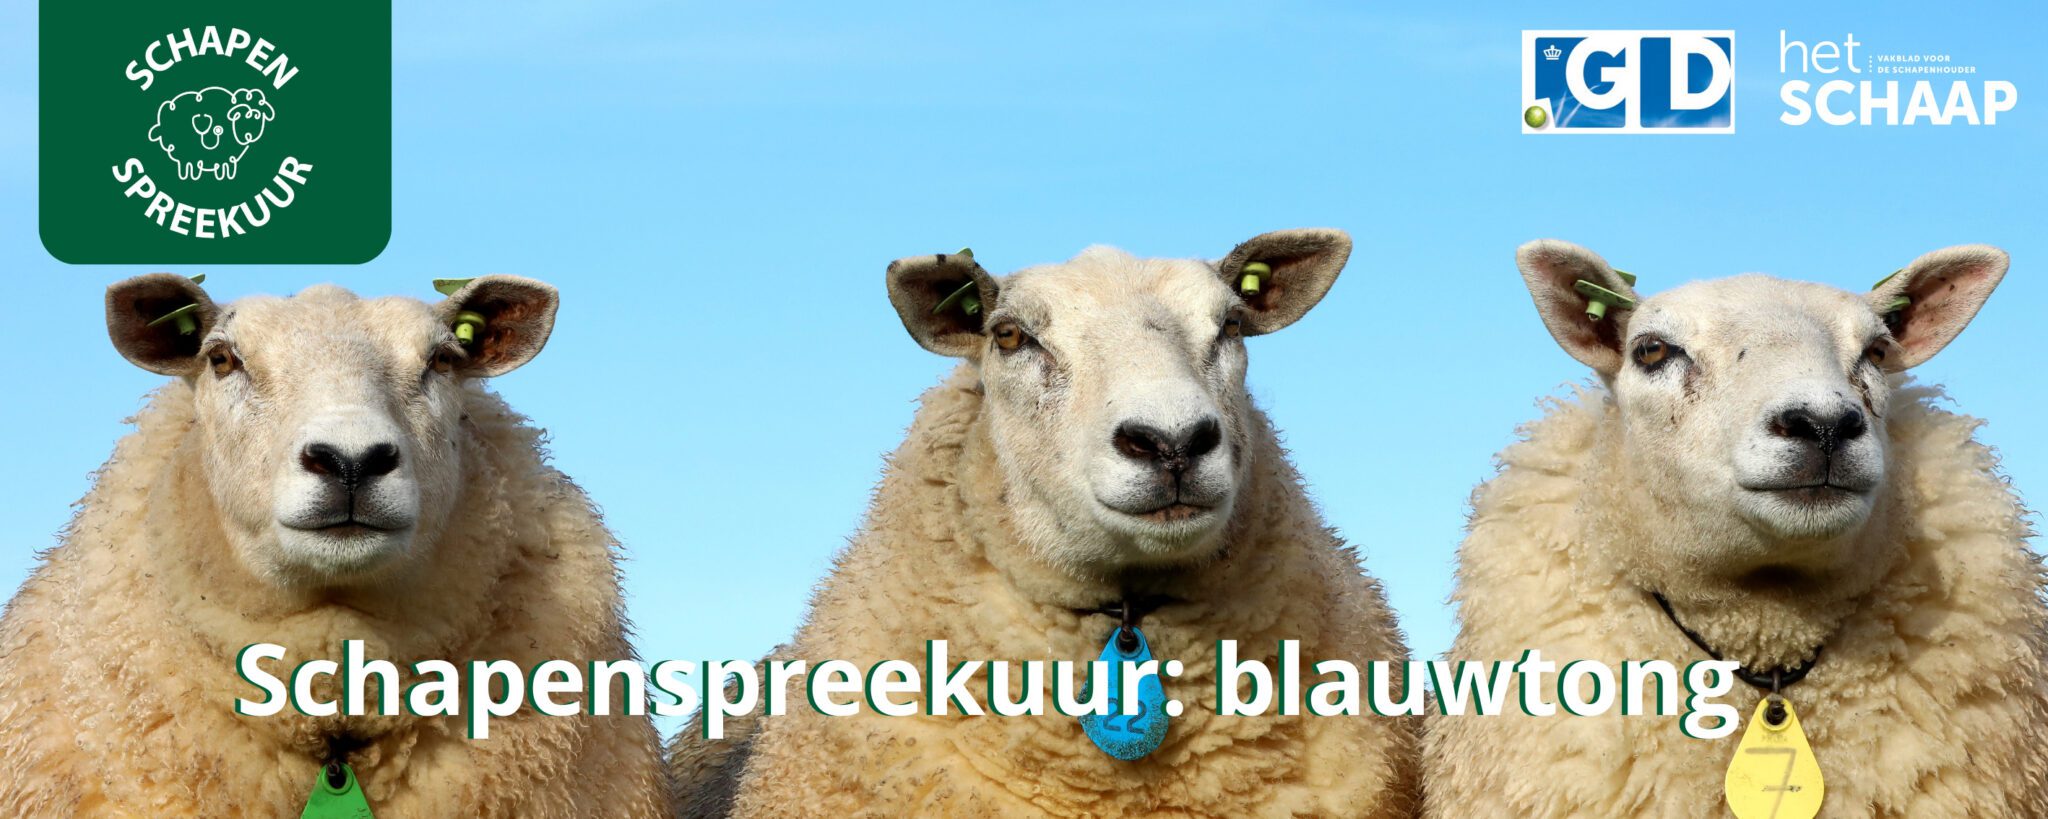 schapenspreekuur blauwtong